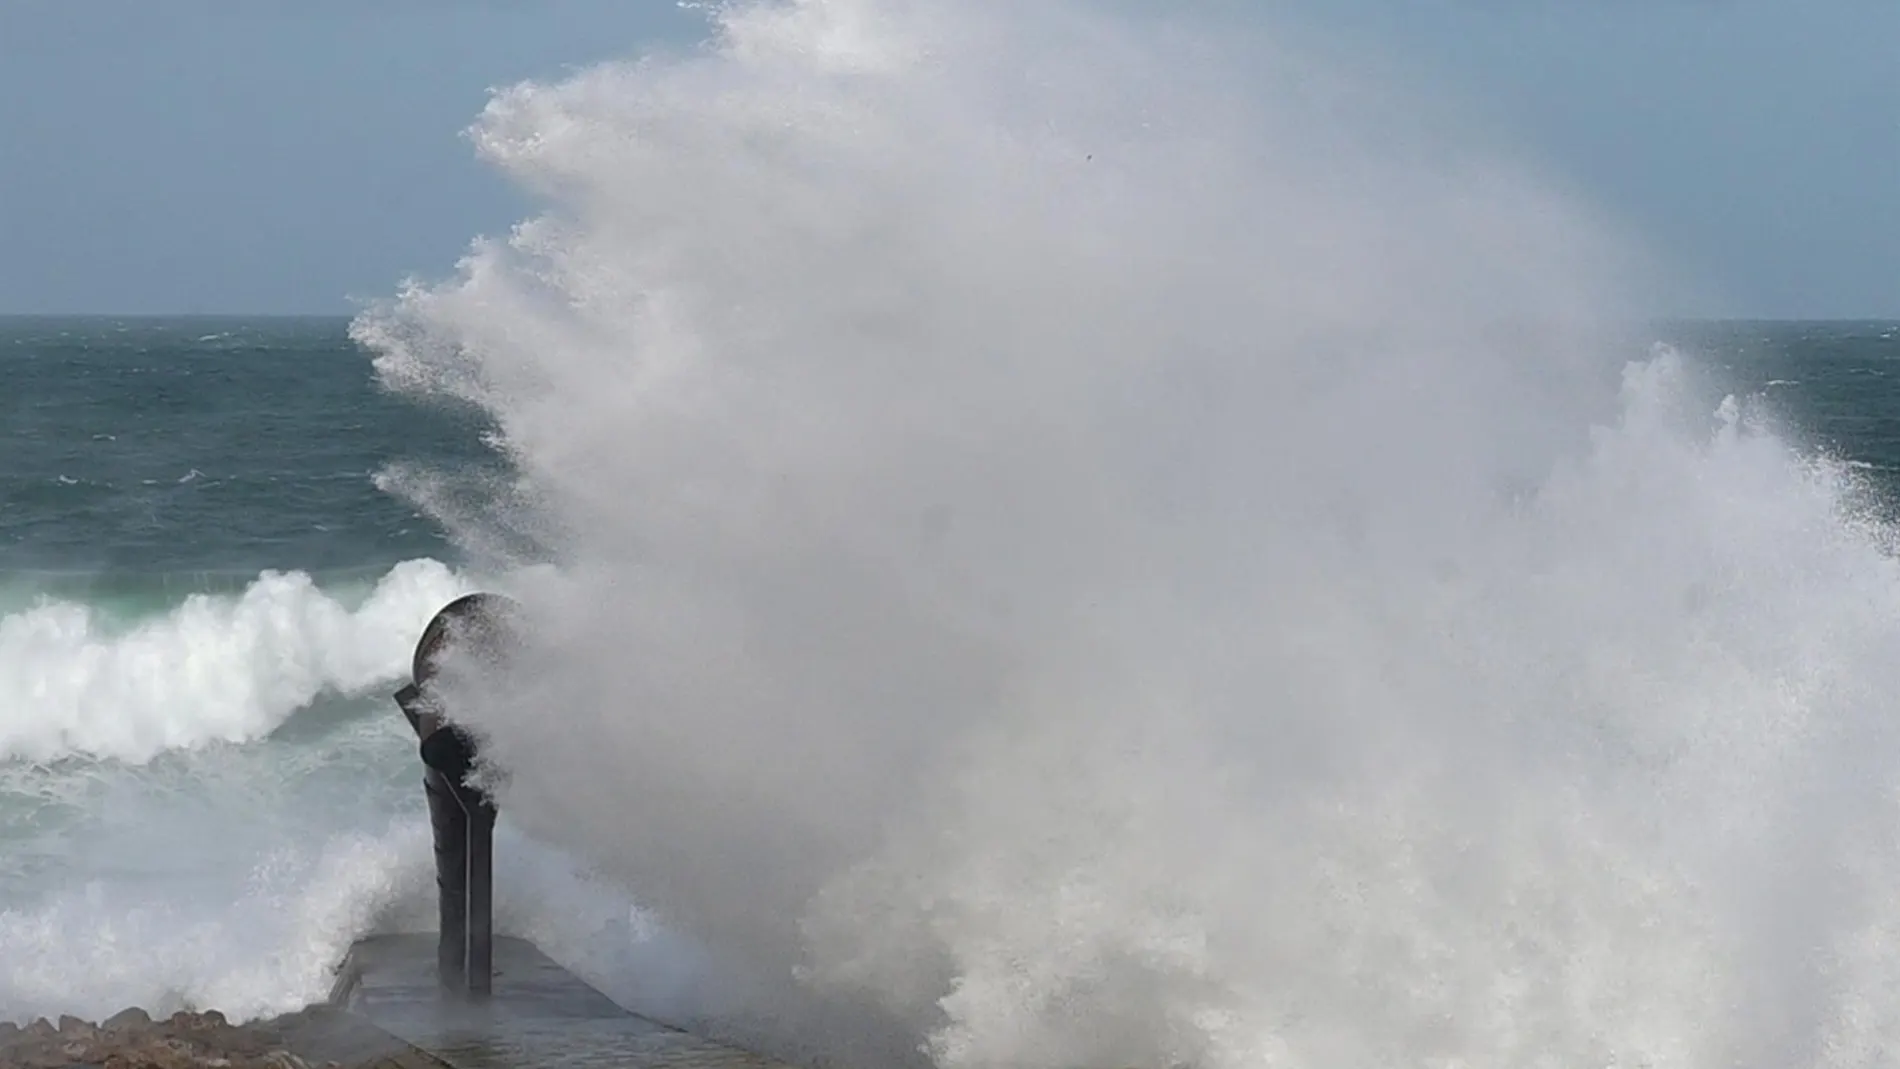 Galicia, Asturias, Cantabria y País Vasco están en alerta naranja por olas de 7 metros